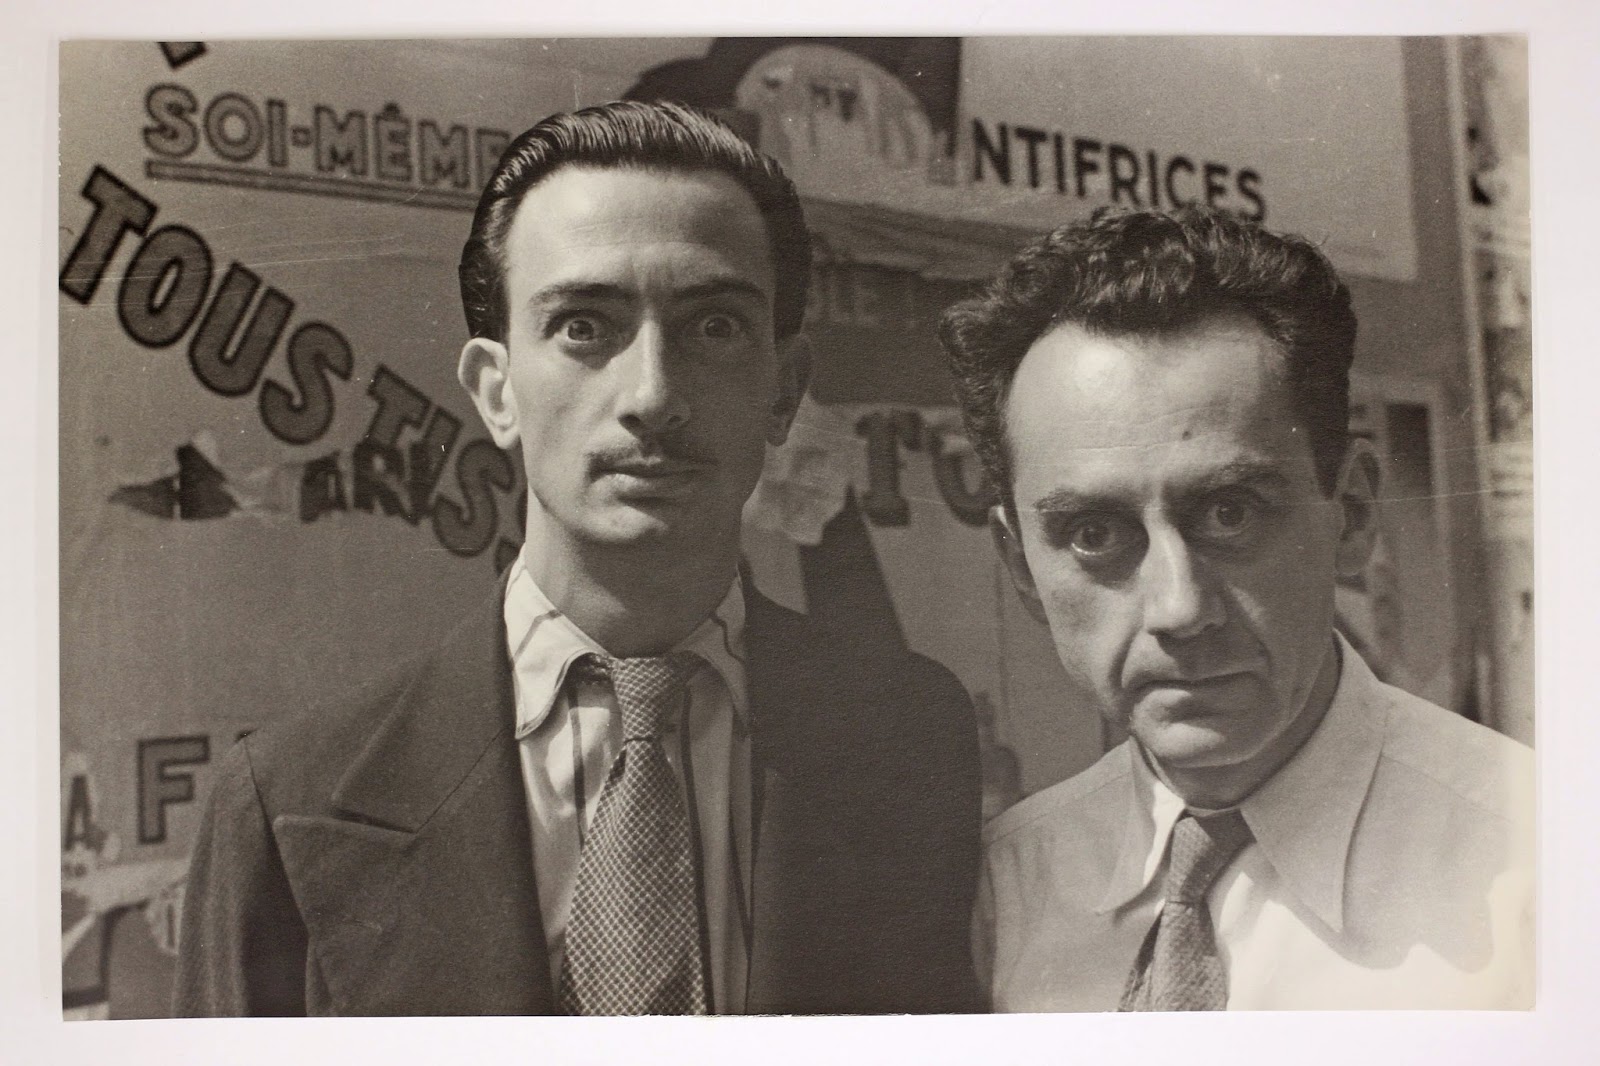 Salvador Dali and Man Ray